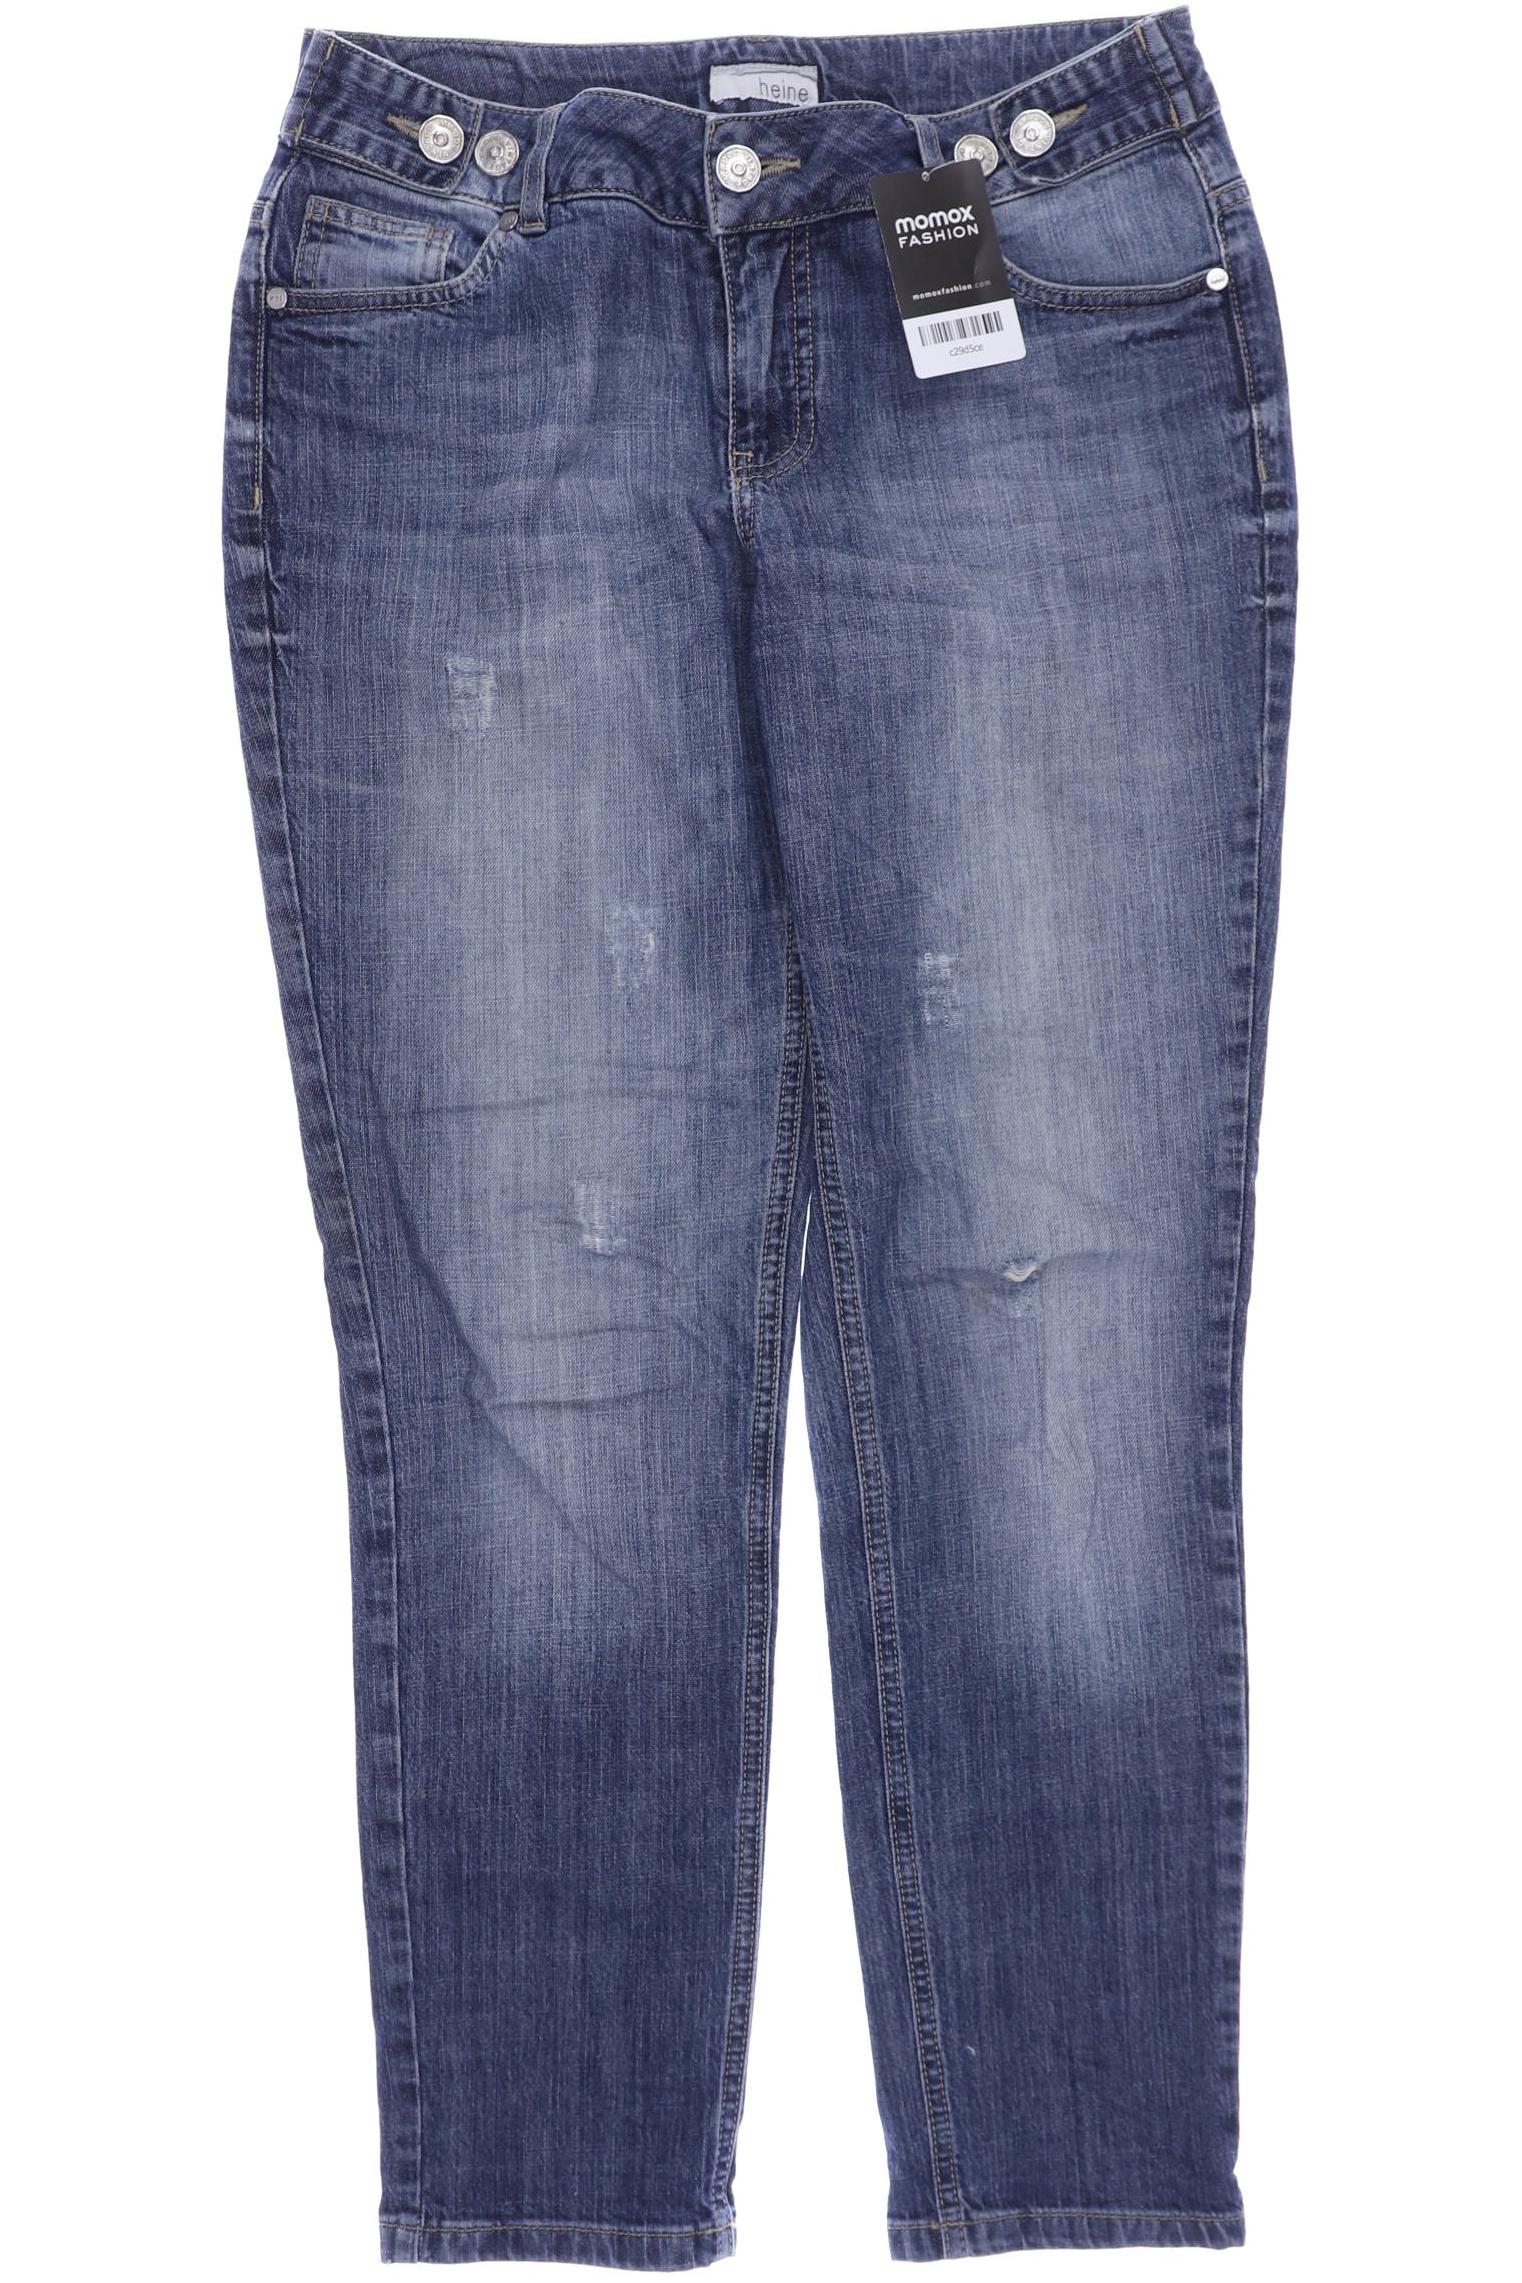 Heine Damen Jeans, marineblau von heine